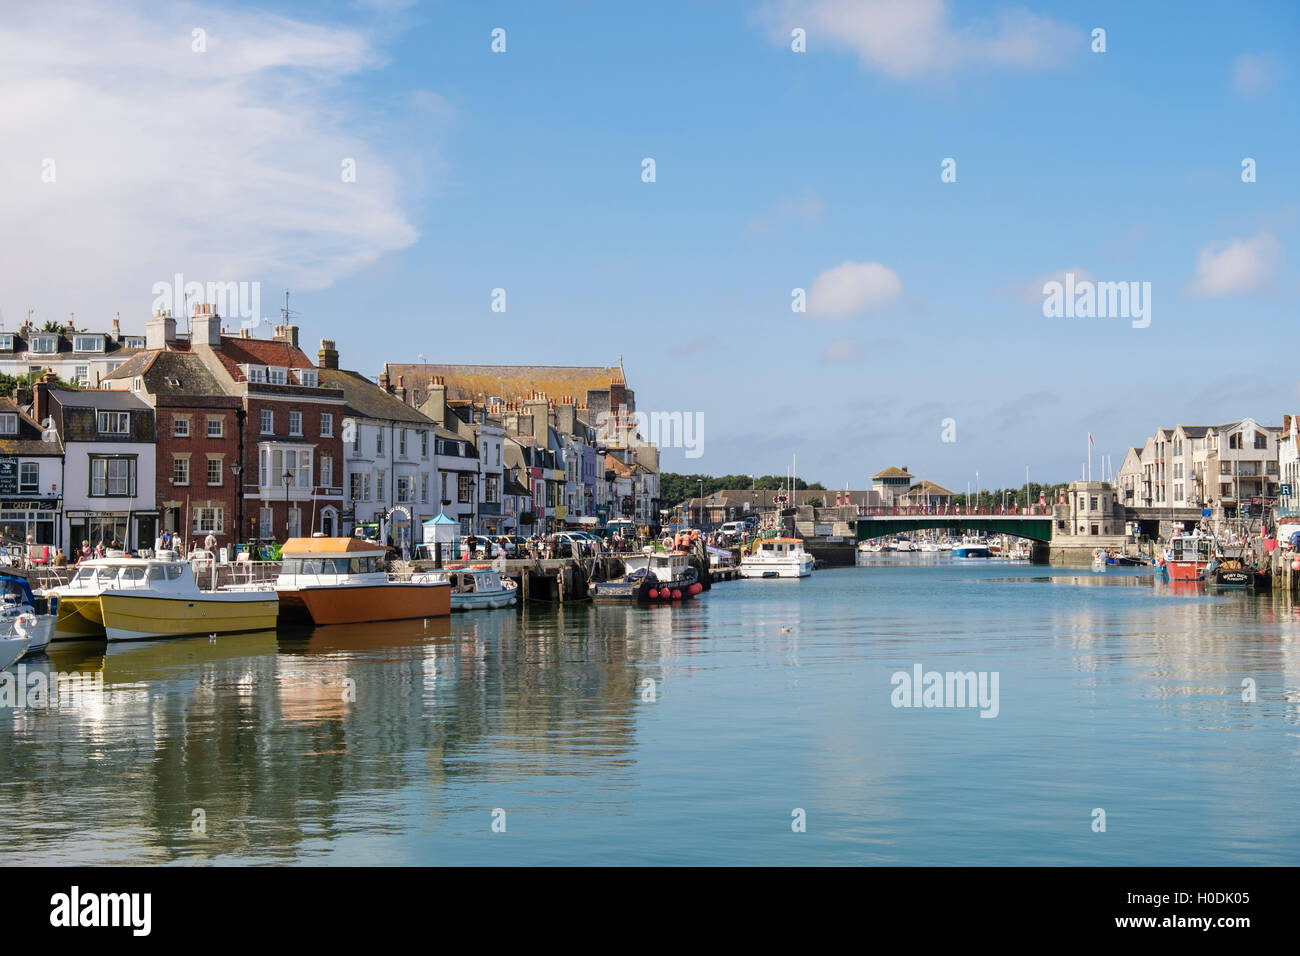 Vue de la ville de Weymouth Pont sur avant-port sur la rivière Wey. Melcombe Regis, Weymouth, Dorset, Angleterre, Royaume-Uni, Angleterre Banque D'Images